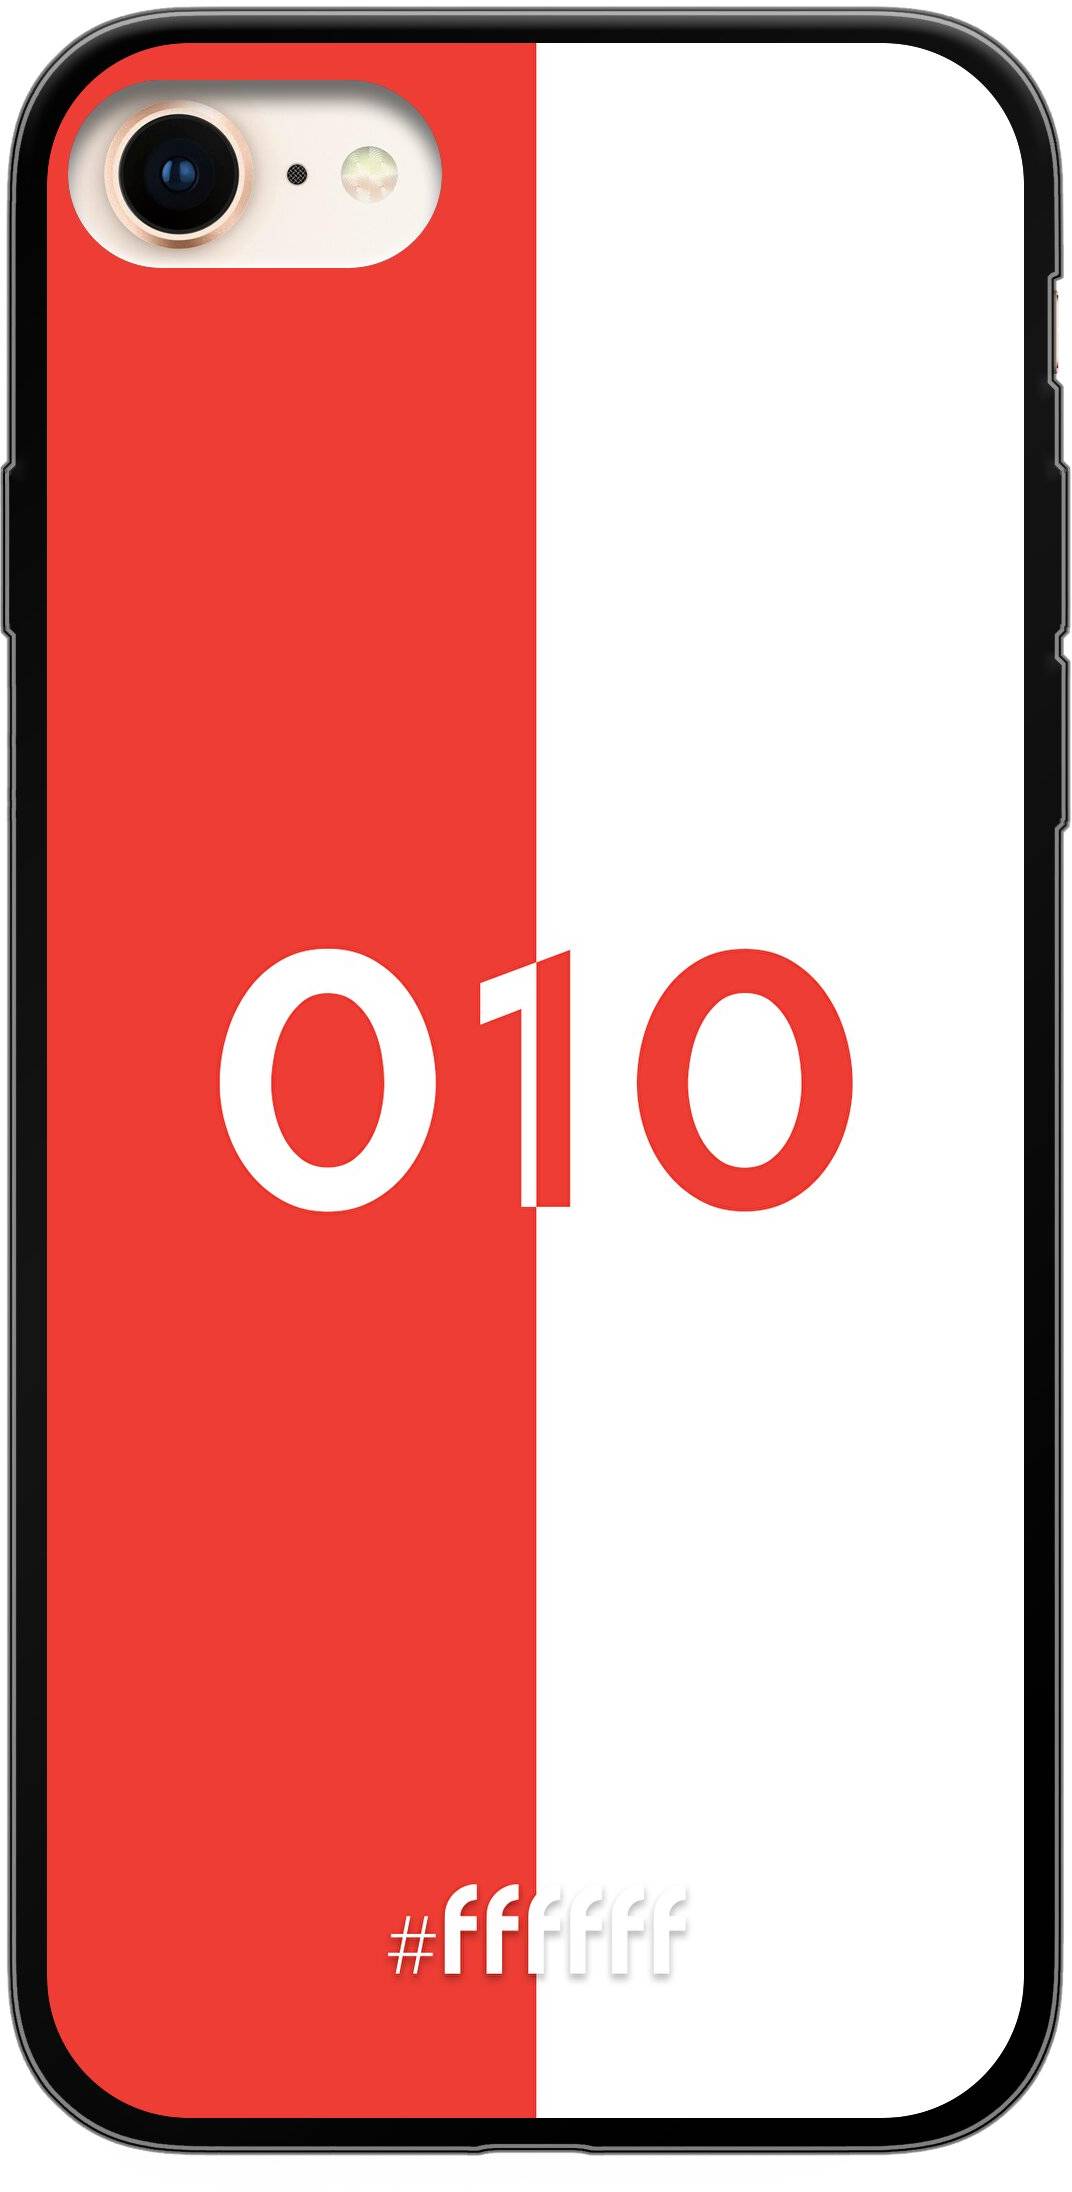 Feyenoord - 010 iPhone 7